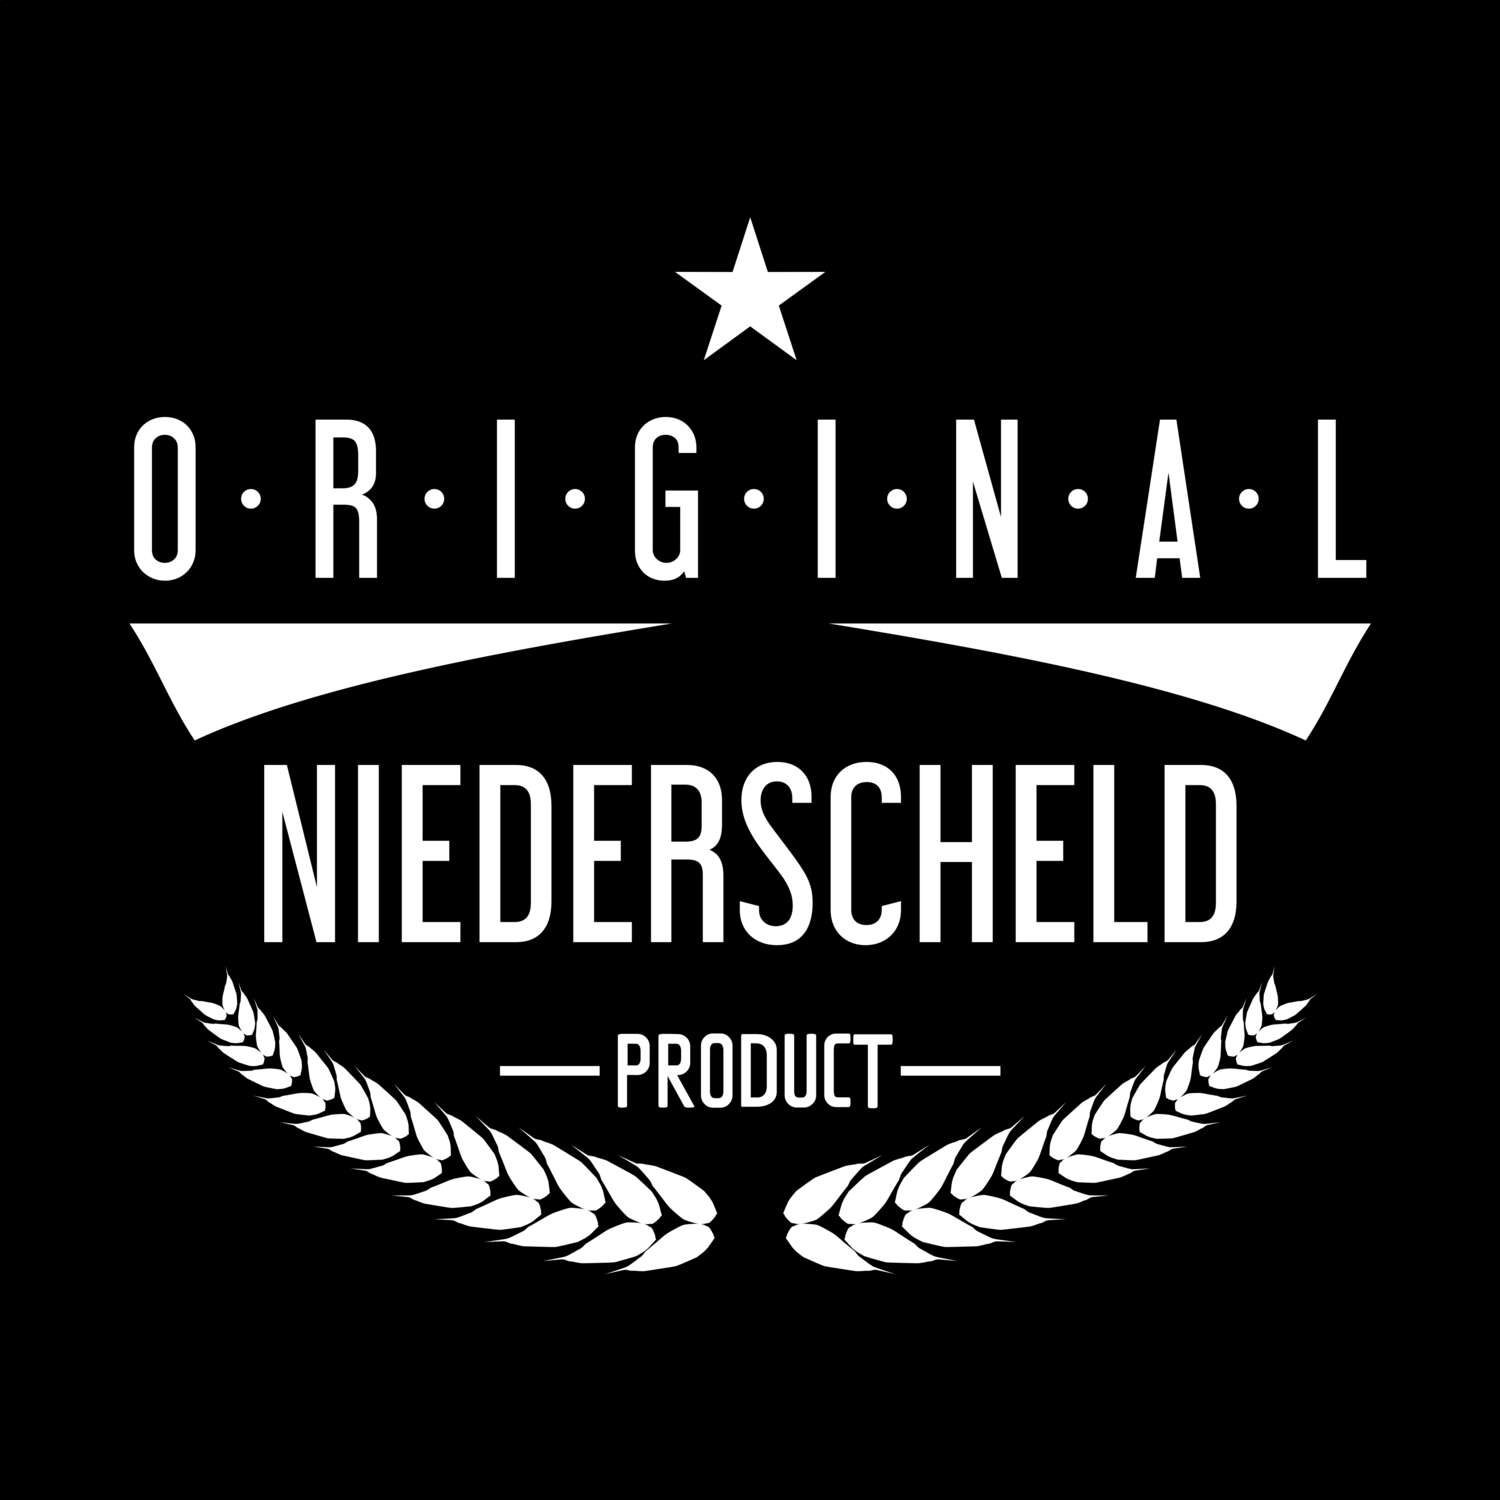 Niederscheld T-Shirt »Original Product«